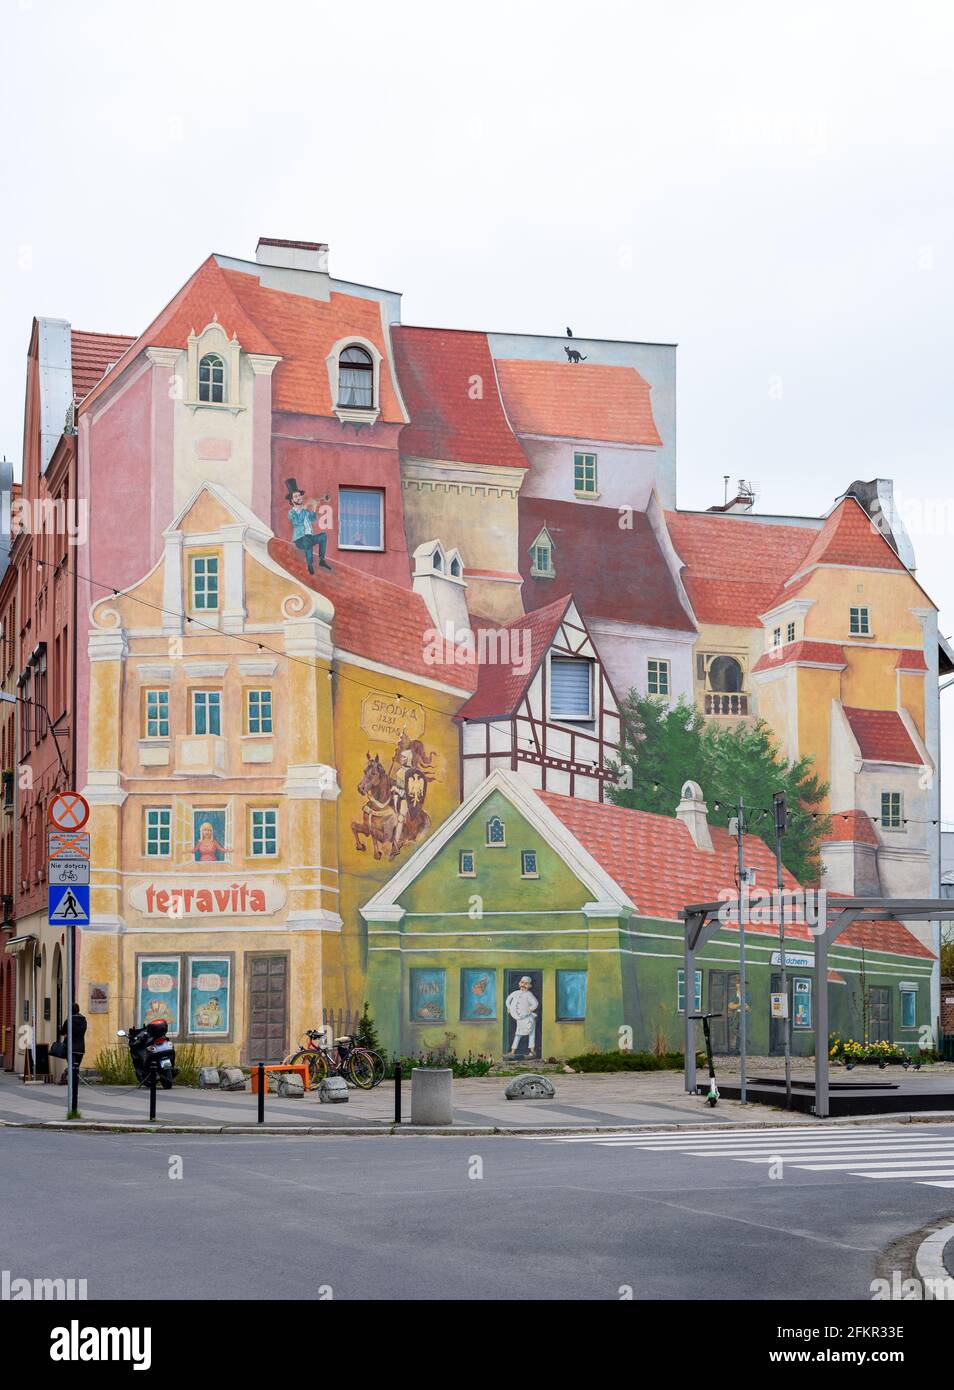 Poznan, wielkopolskie, Poland, 01.05.2021: Terravita mural in Srodka, Poznan, Poland, springtime, full view Stock Photo